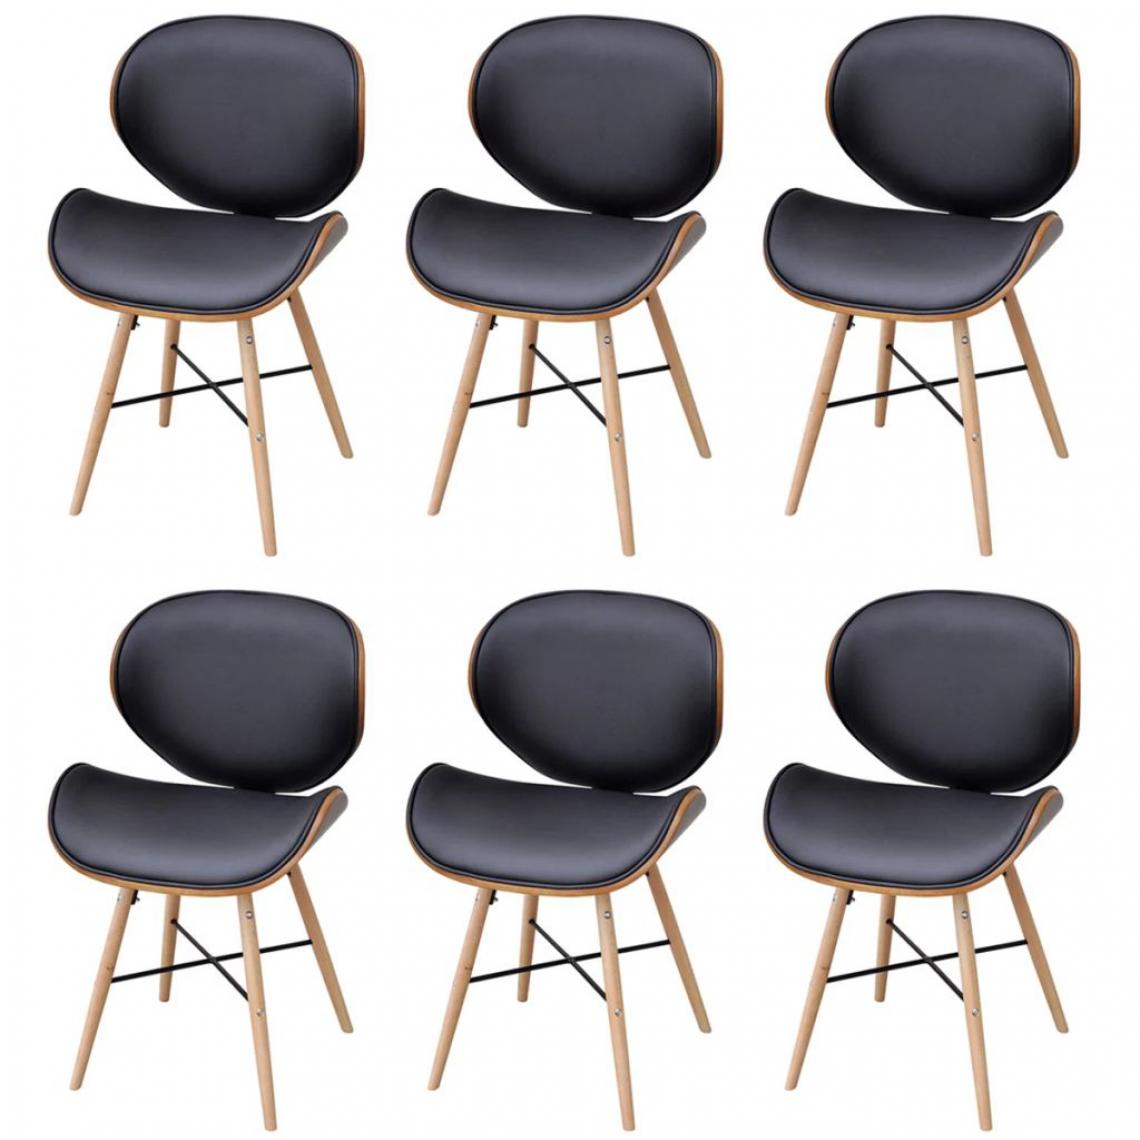 Vidaxl - 6 chaises sans accoudoirs avec cadre en bois cintré - Noir - Chaises